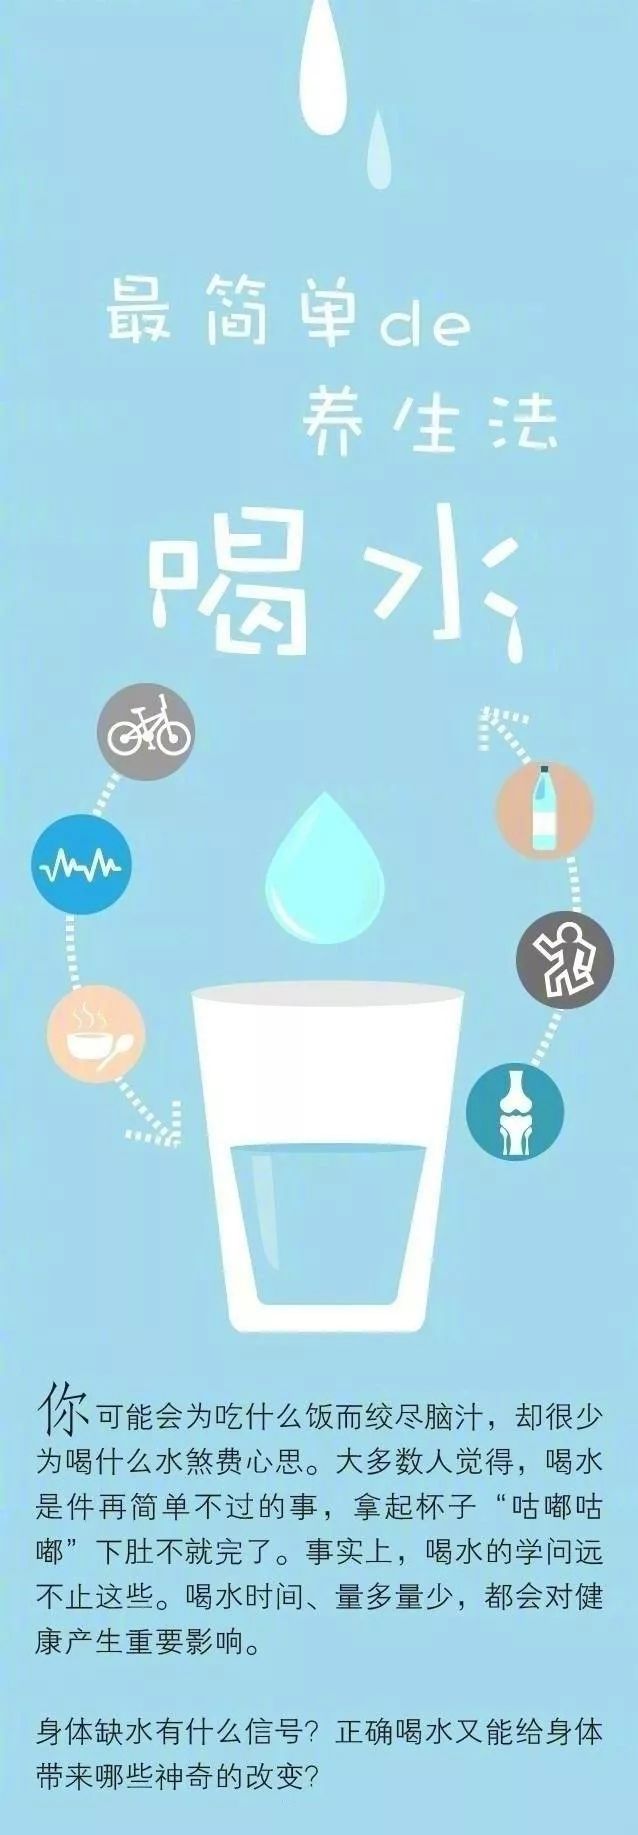 10个时刻喝水能"治病!下班别走,先干了这杯"养生白开水"